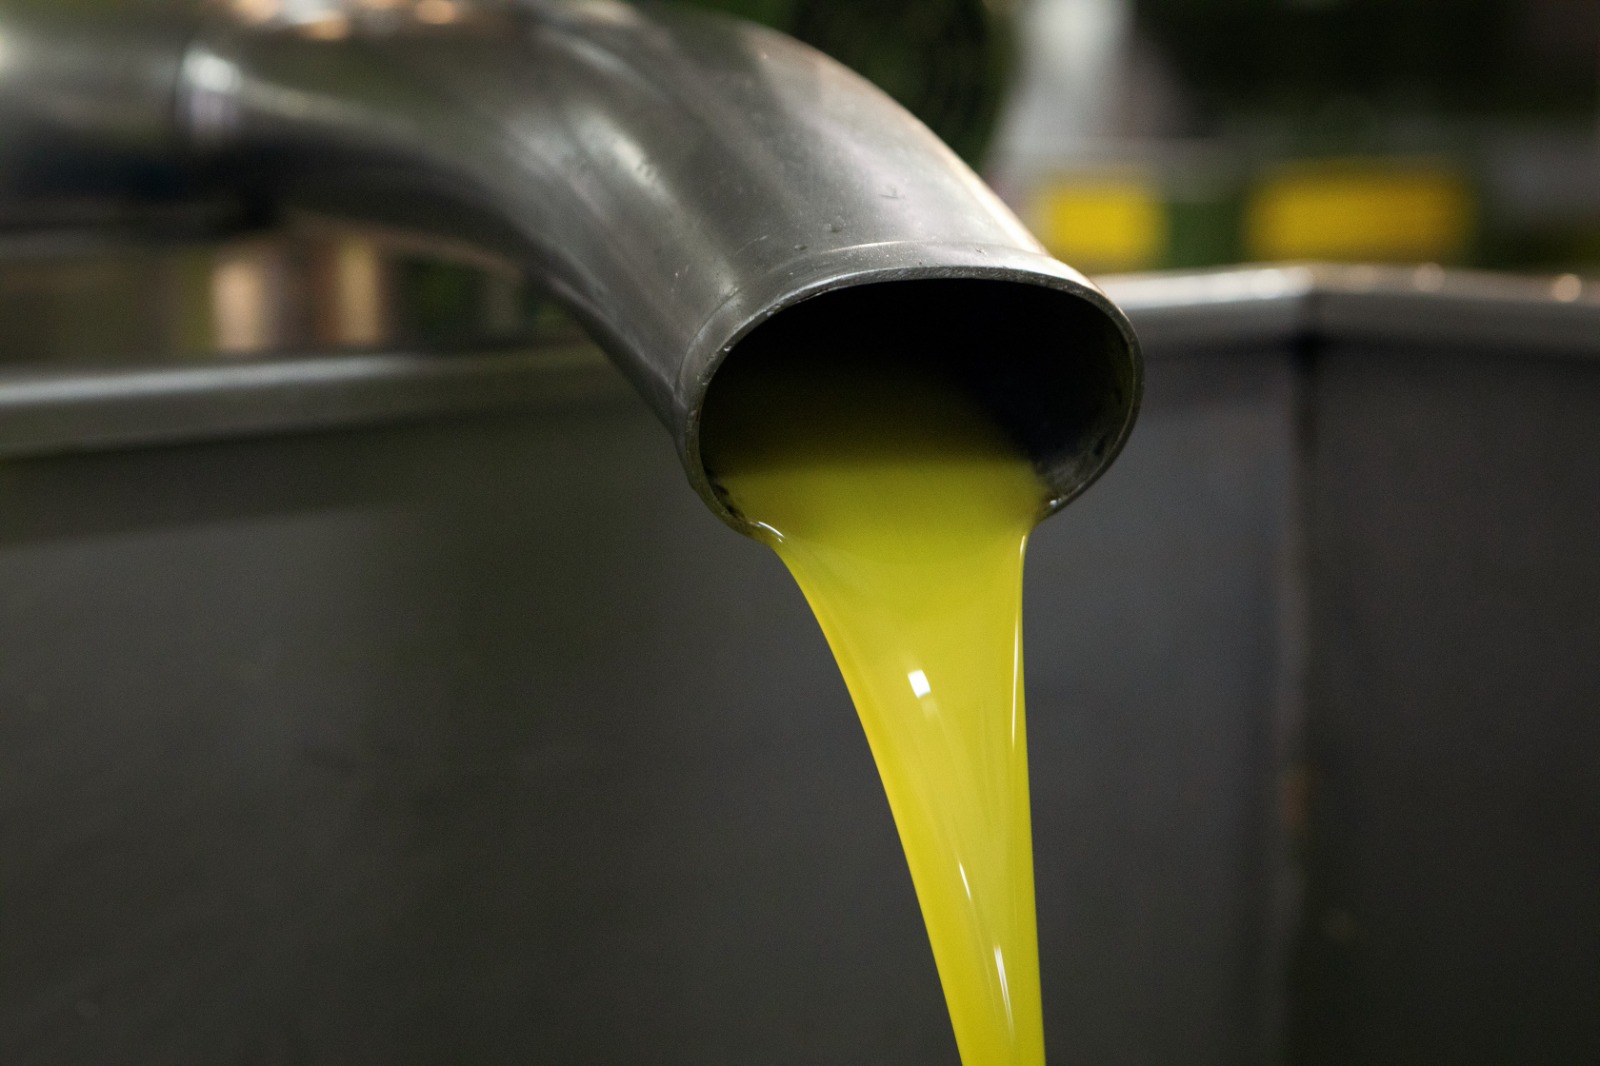 Olio extravergine d’oliva, la Campania ottiene il riconoscimento IGP